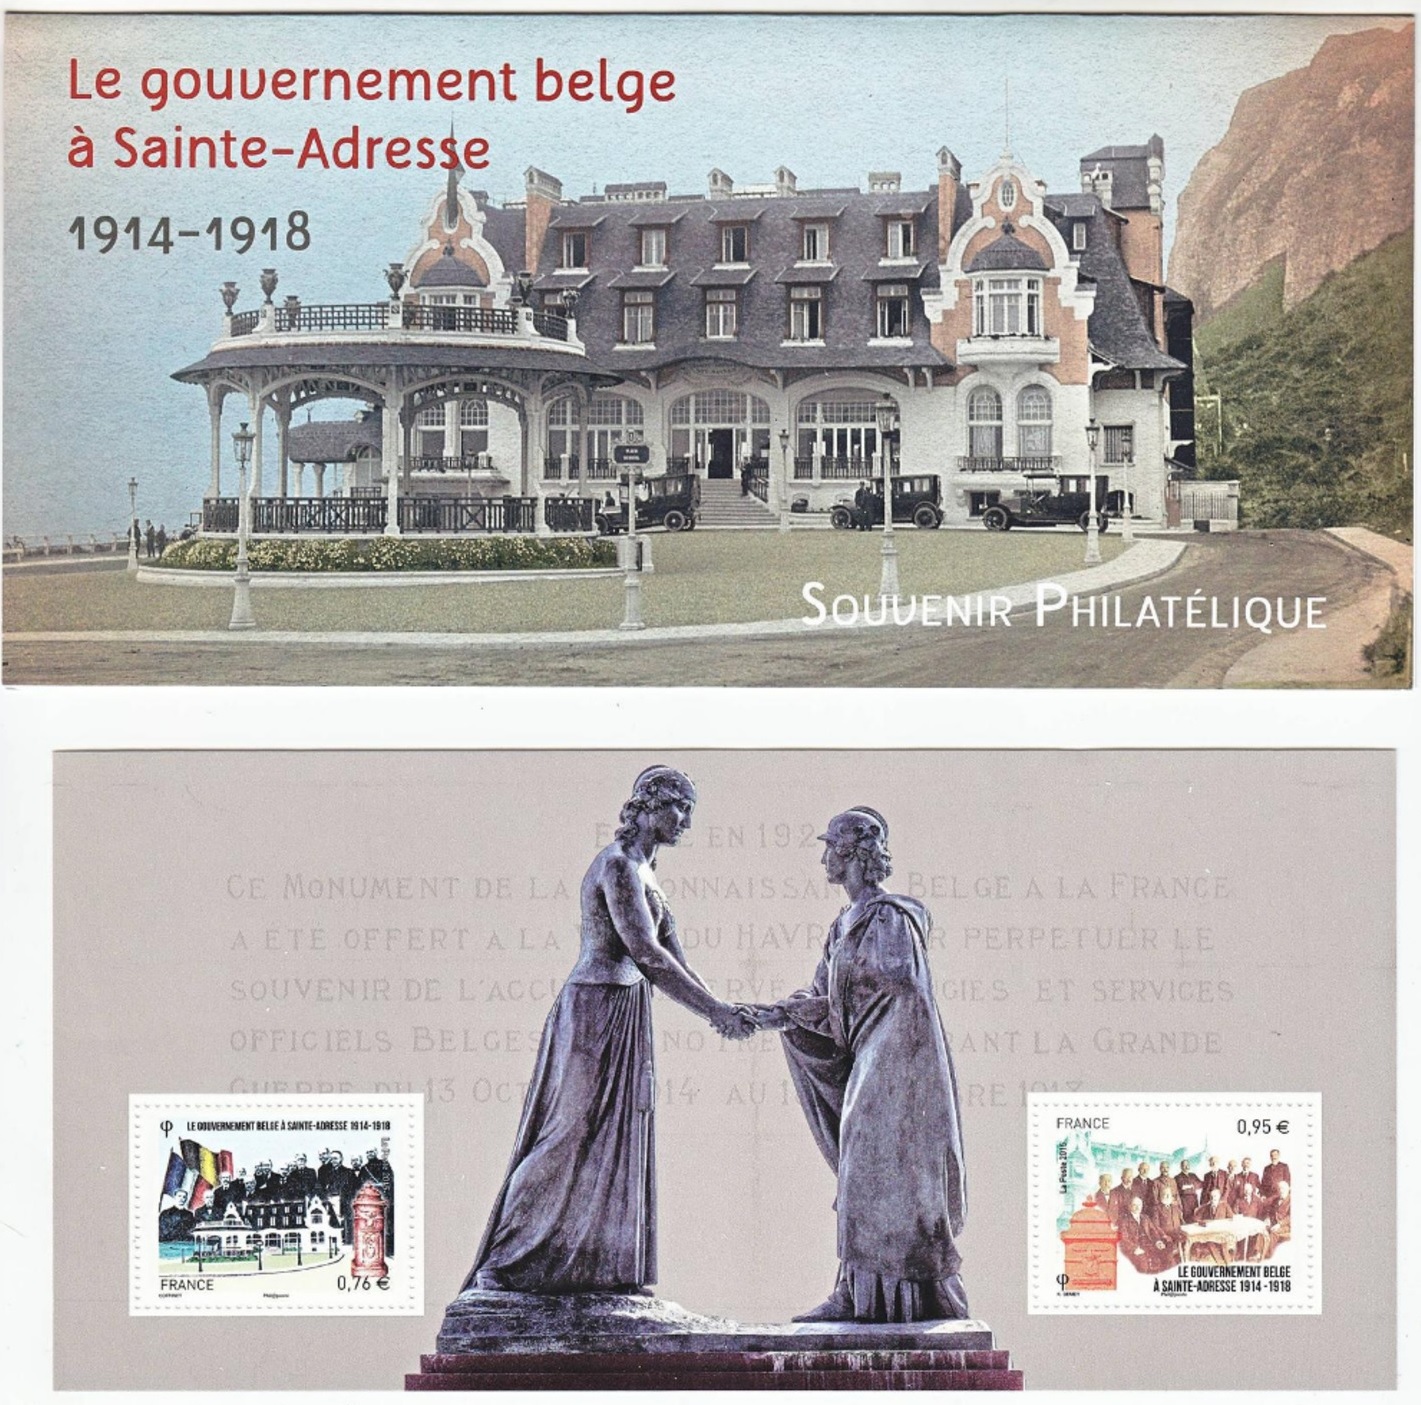 Souvenir philatélique - le gouvernement belge à Sainte-Adresse